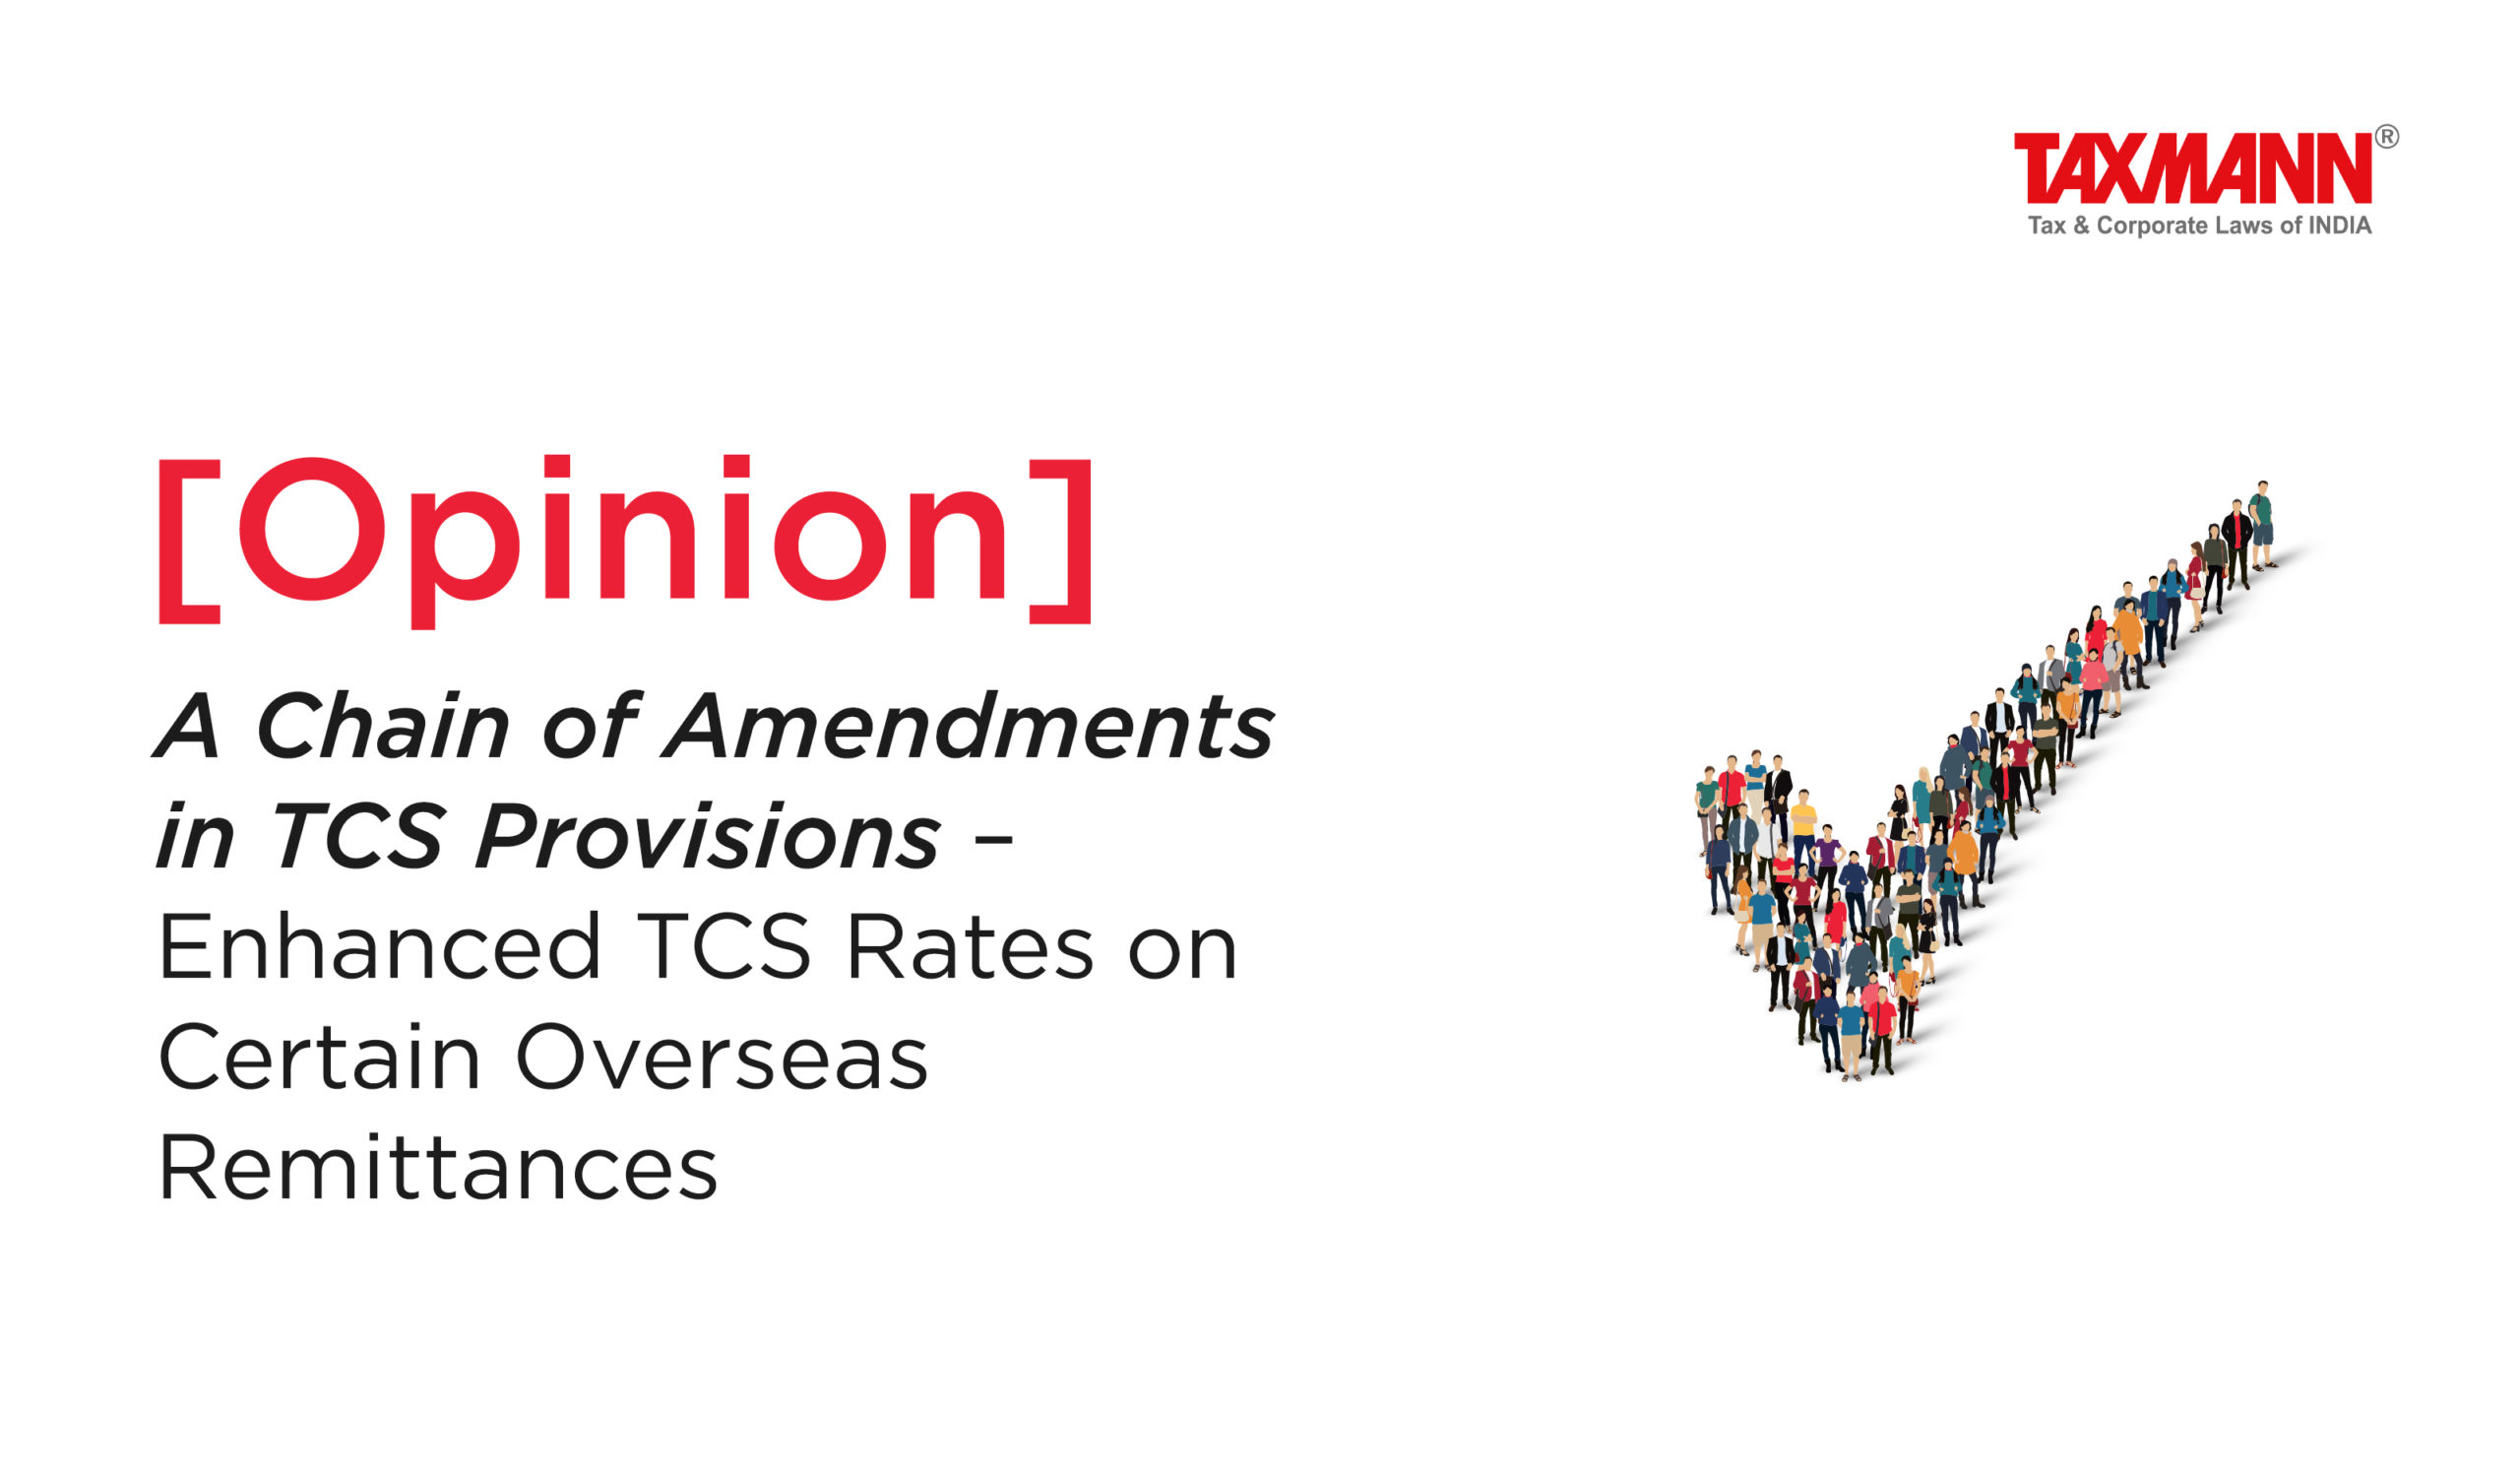 Amendments in TCS Provisions